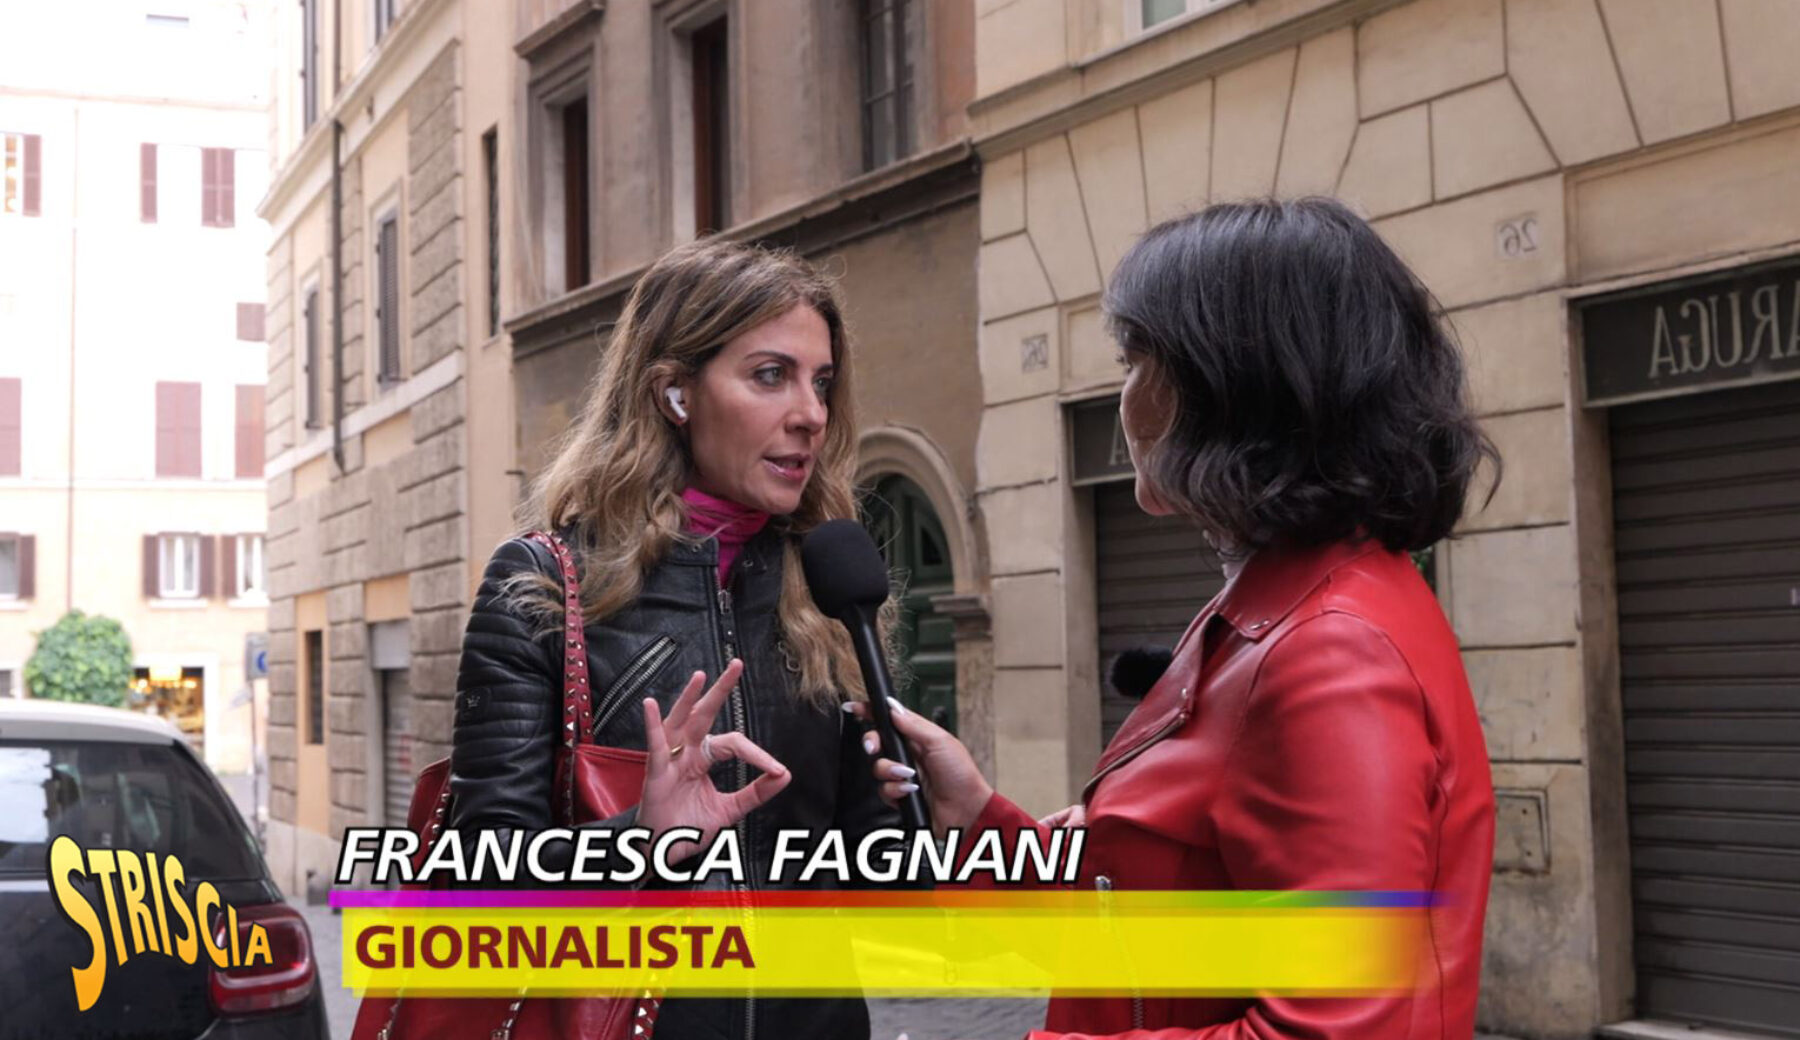 Stasera a Striscia, Francesca Fagnani influencer “a sua insaputa”. L’intervista alla “Belva” sullo sfoggio di preziosi di una nota griffe